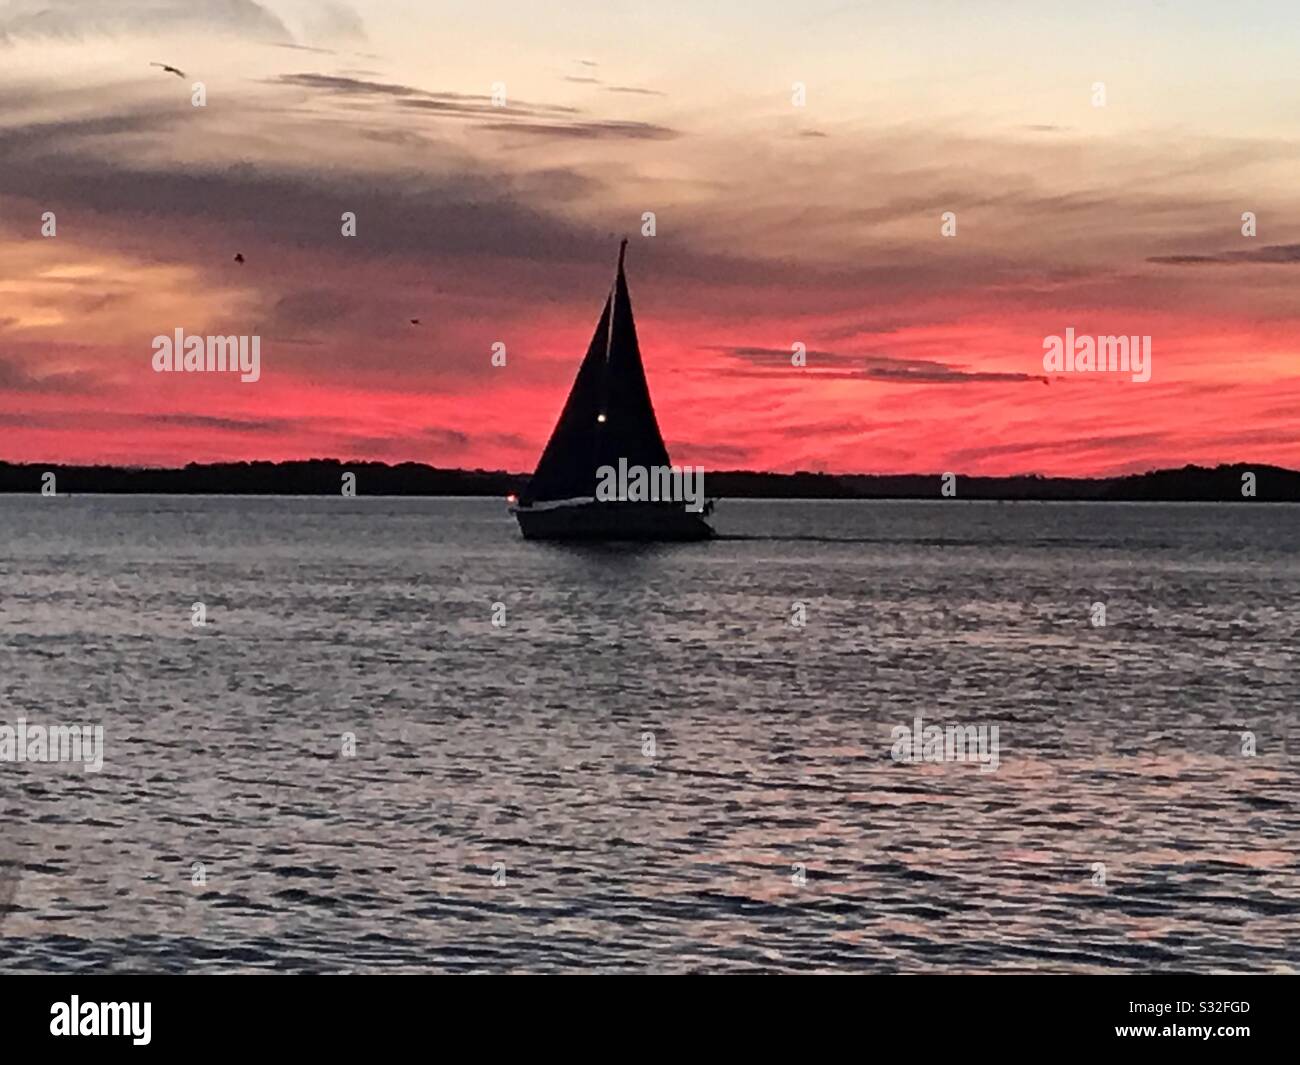 Sunset sailing, Amelia Island Stock Photo